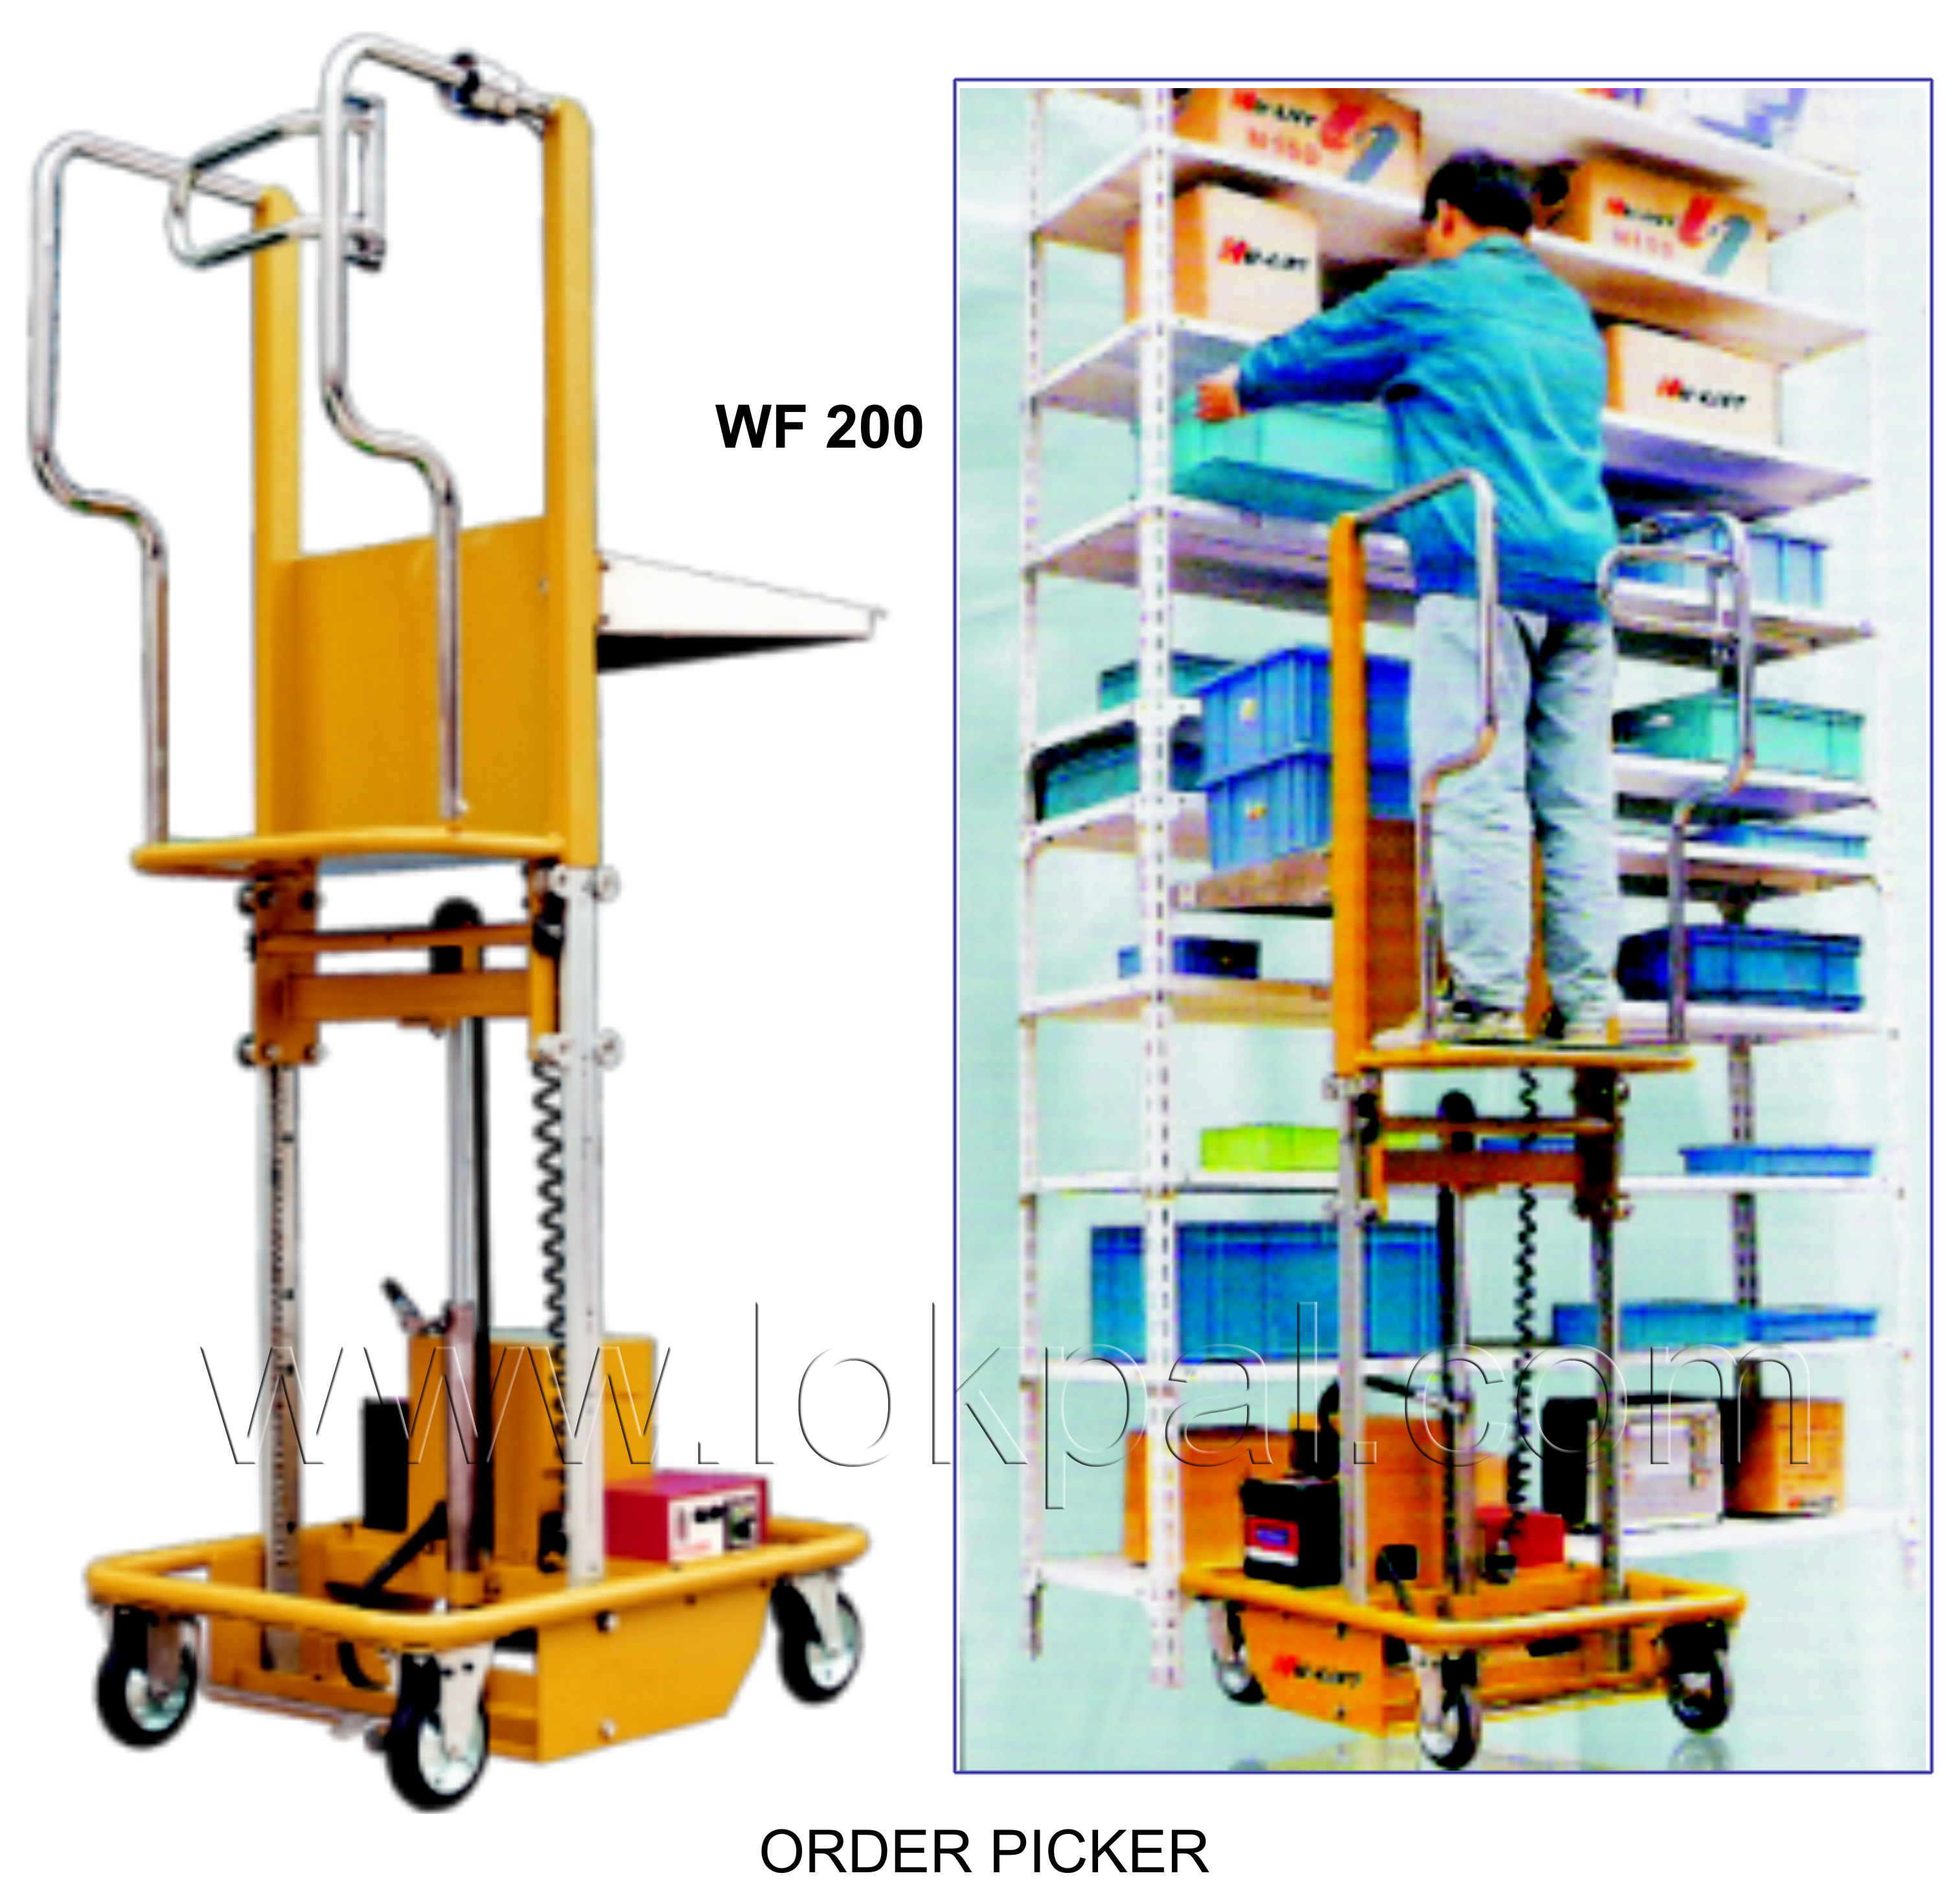 Order Picker Low HT, Order Picker Manufacturer, Order Picker Low HT Supplier, Dealers, Delhi NCR, Noida, India